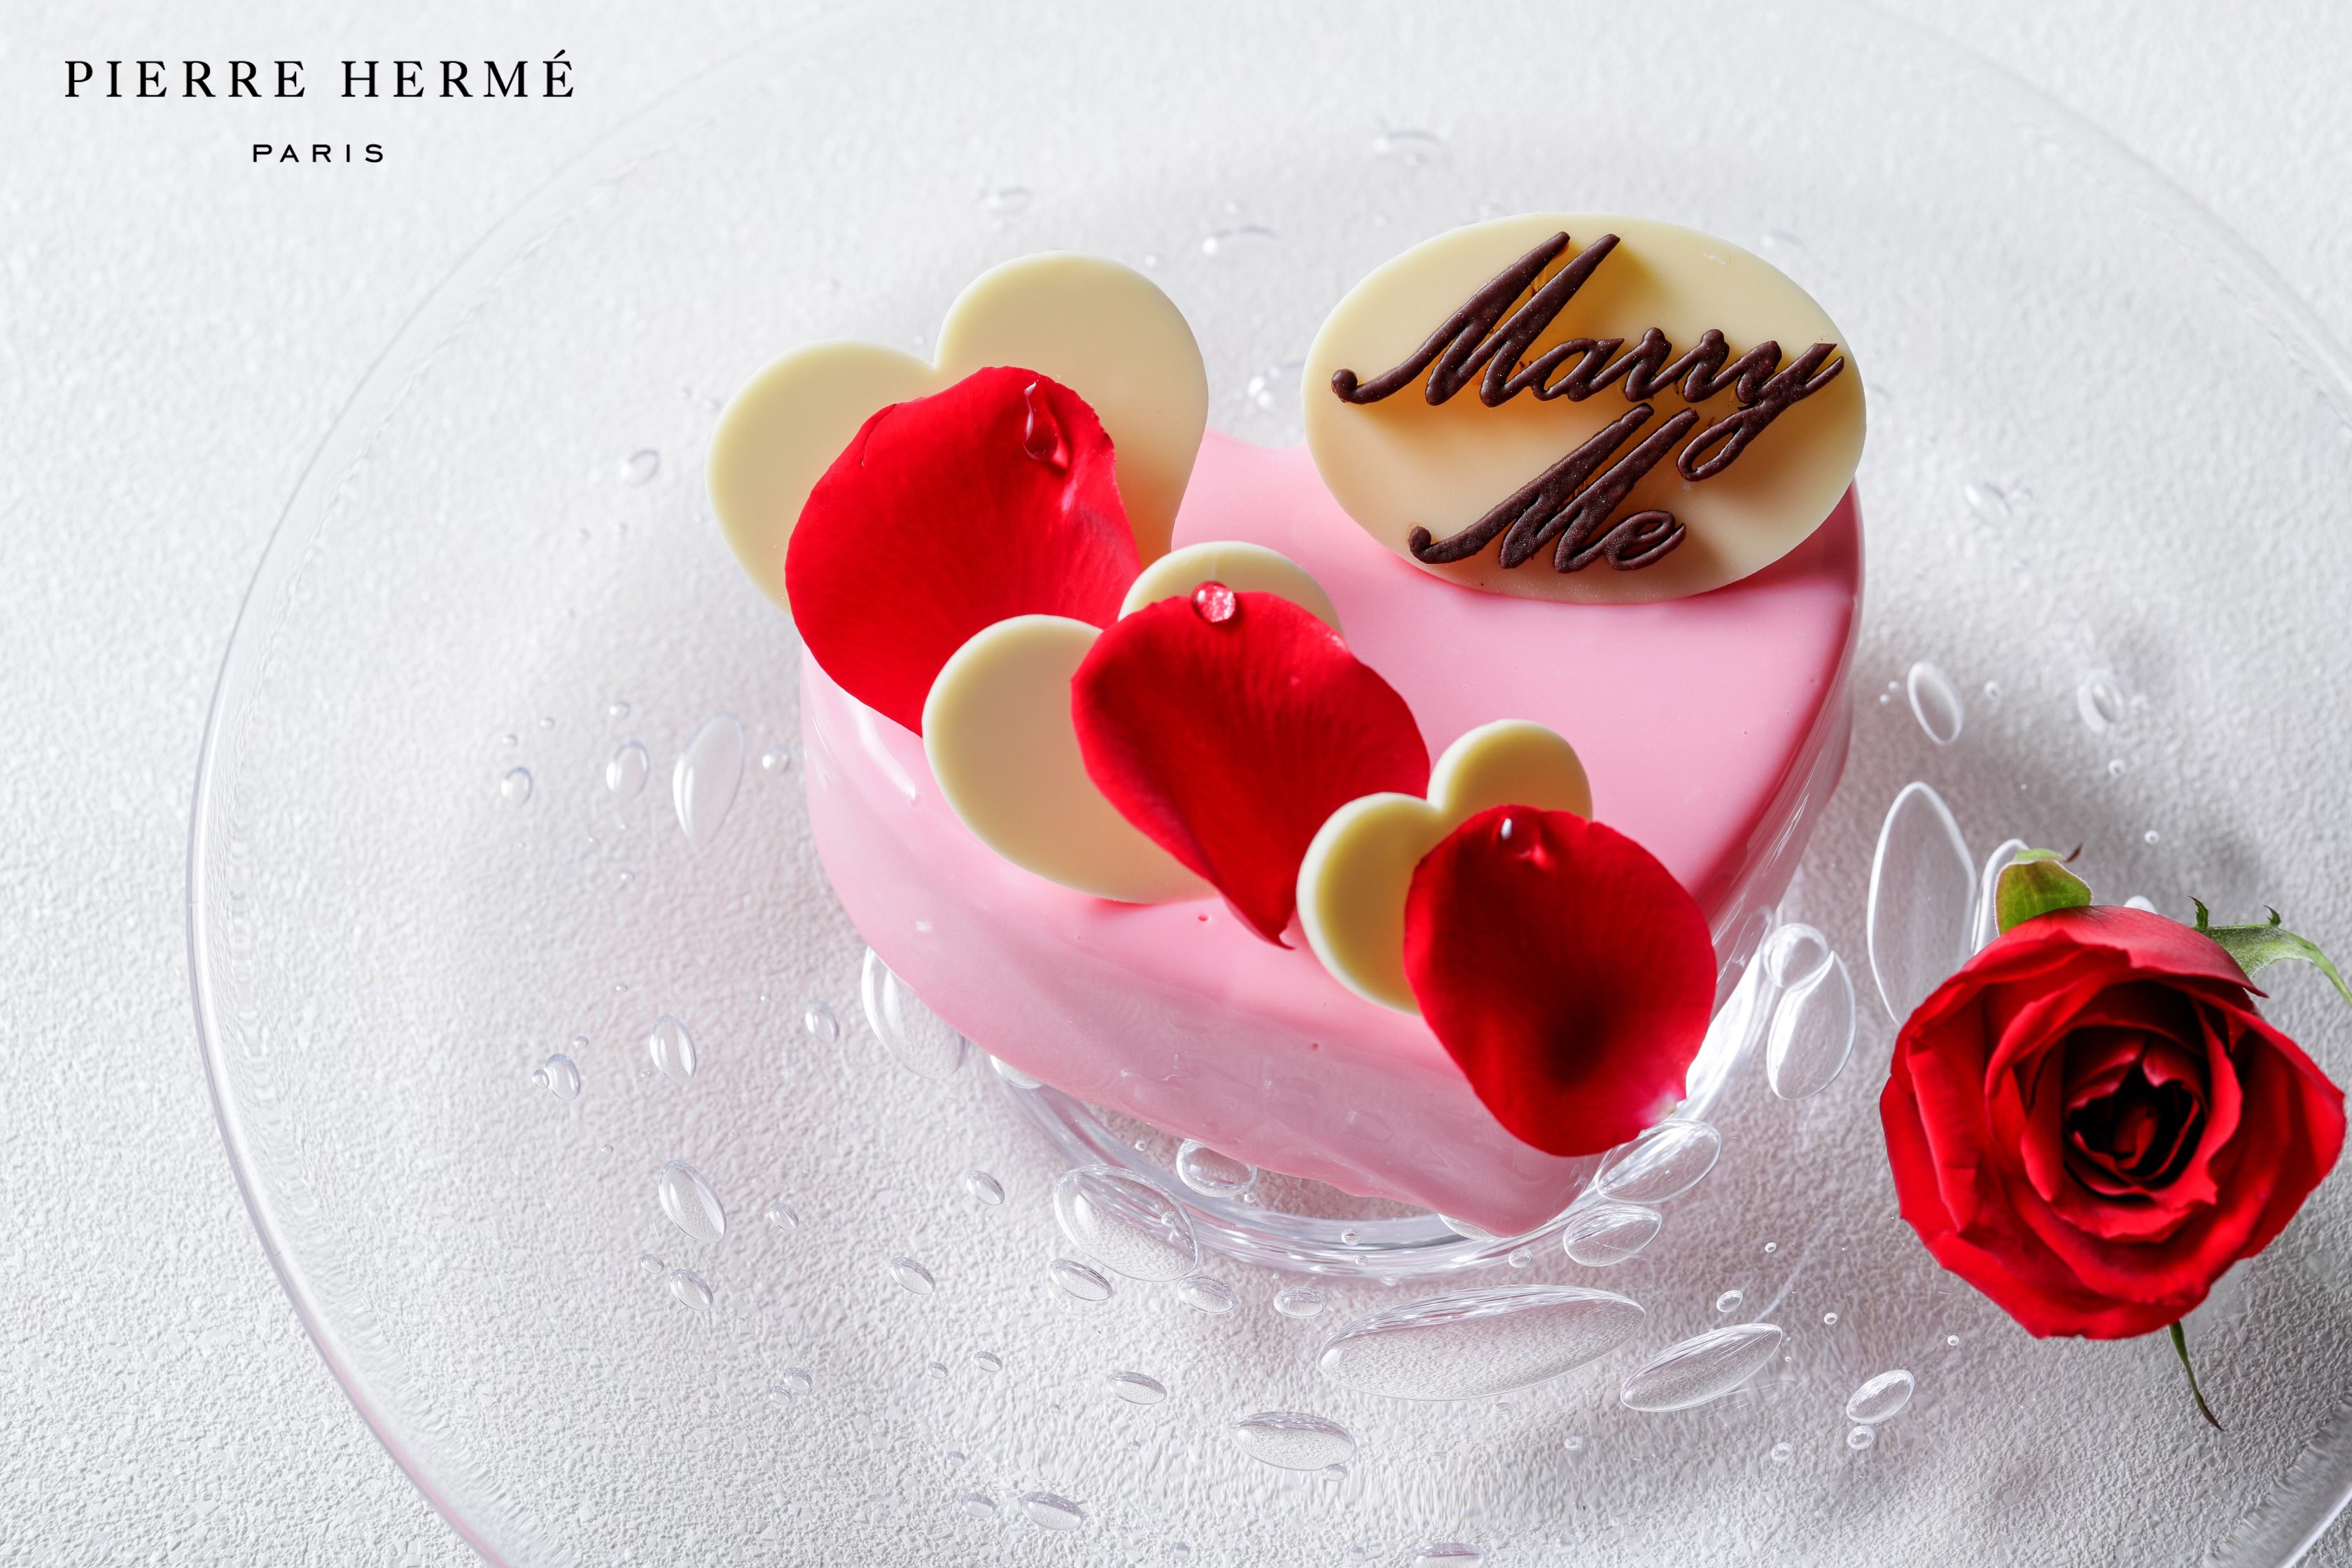 【名古屋】チャペルを貸し切ったサプライズ・プロポーズが人気の「最高のプロポーズ」 ピエール・エルメ・パリによる プロポーズケーキ付きプランが名古屋で初登場